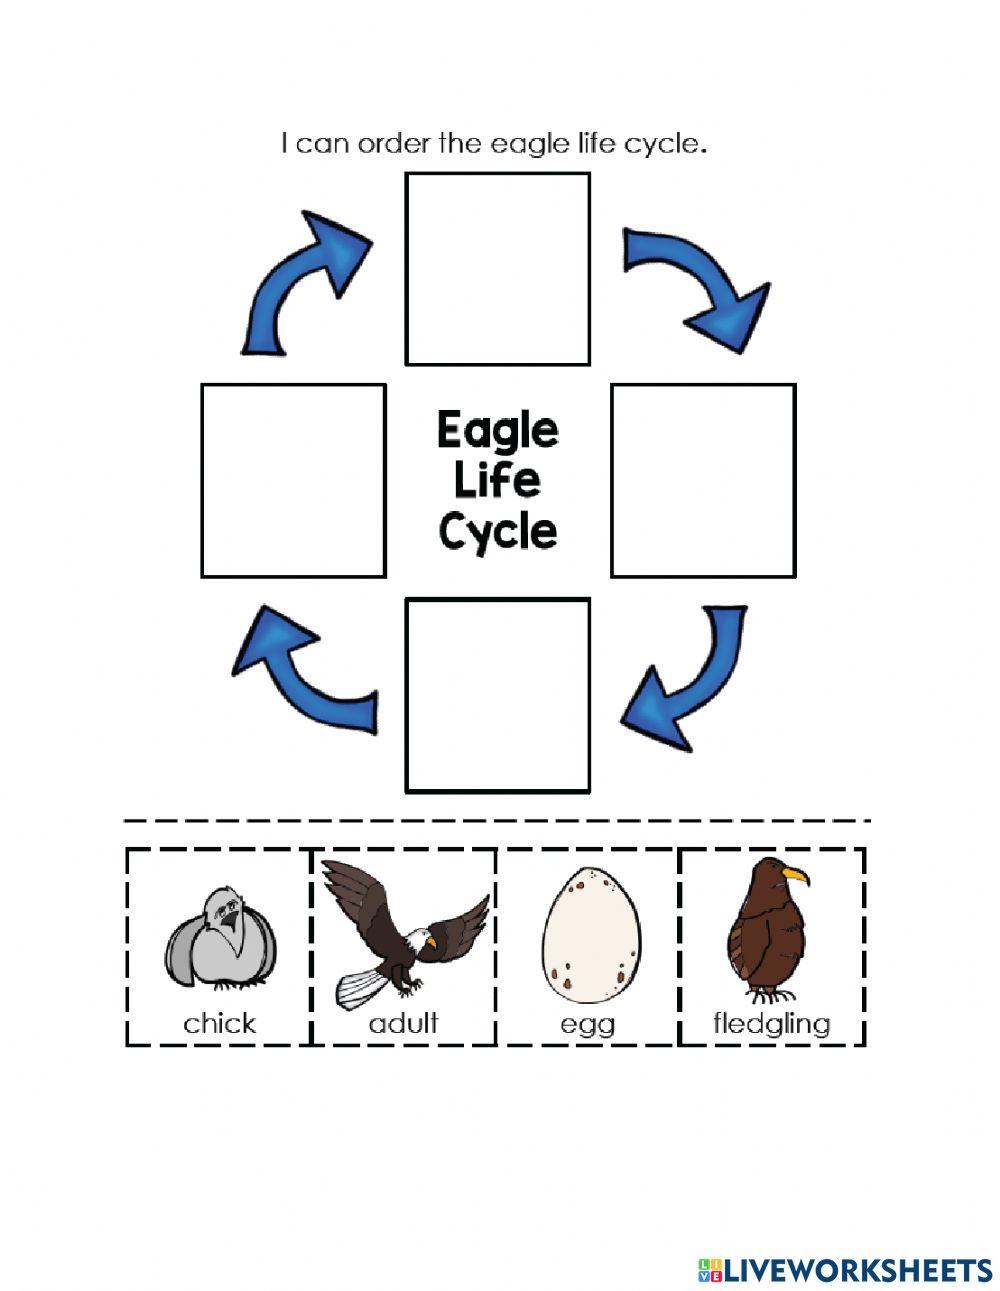 Eagle Life Cycle